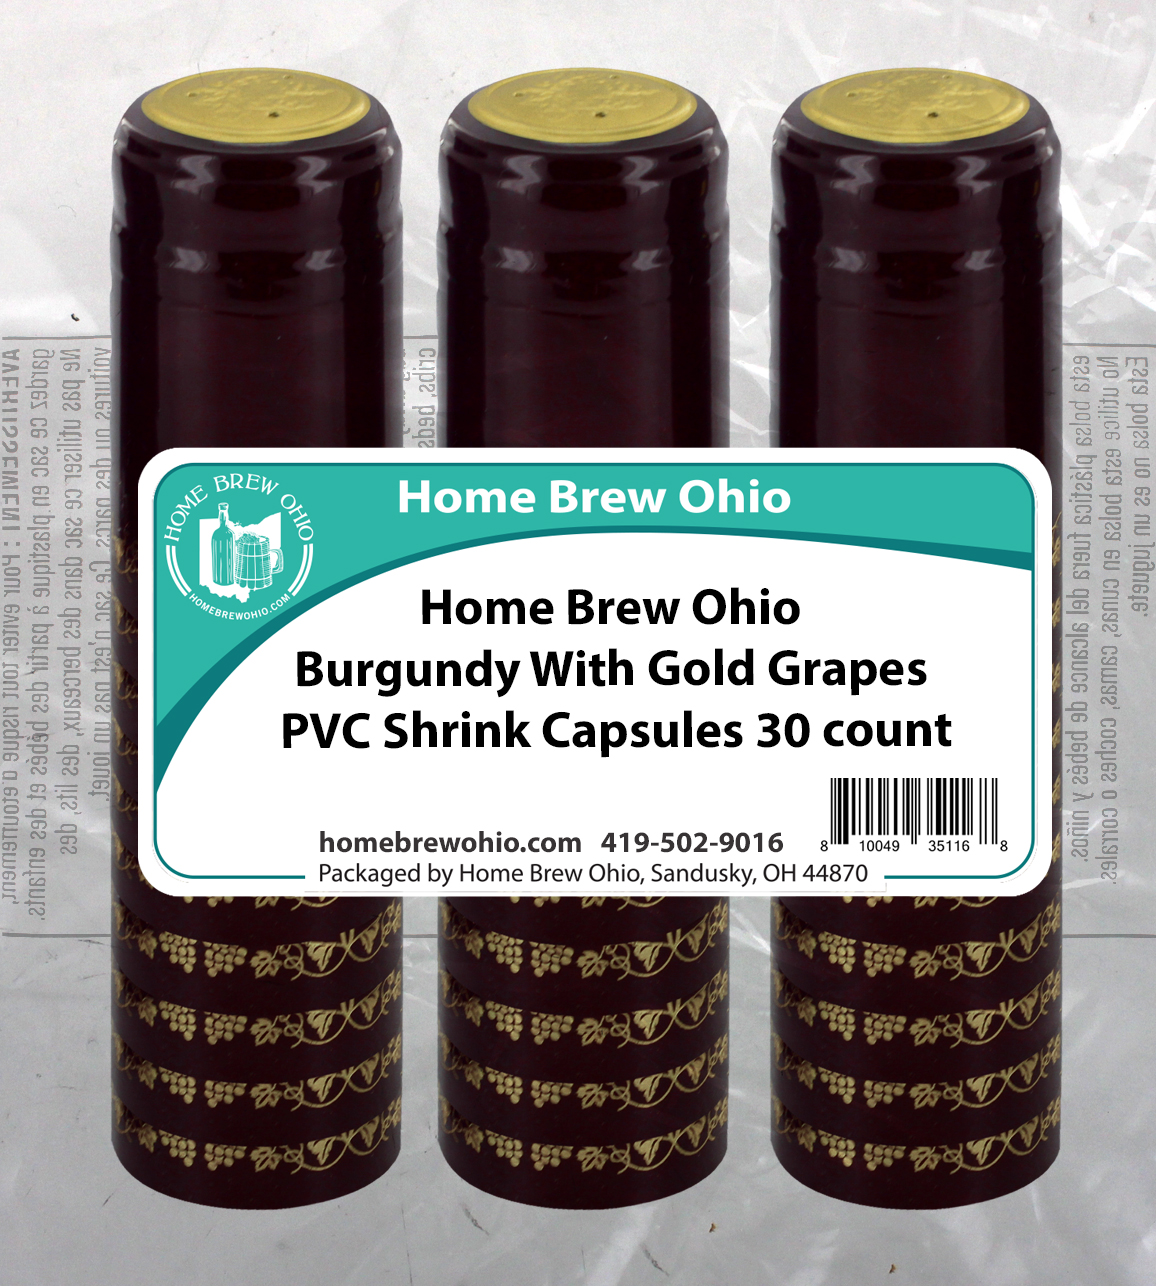 HOME BREW OHIO HOMEBREWOHIO.COM Home Brew Ohio Burgundy With Gold Grapes PVC Shrink Capsules 30 count